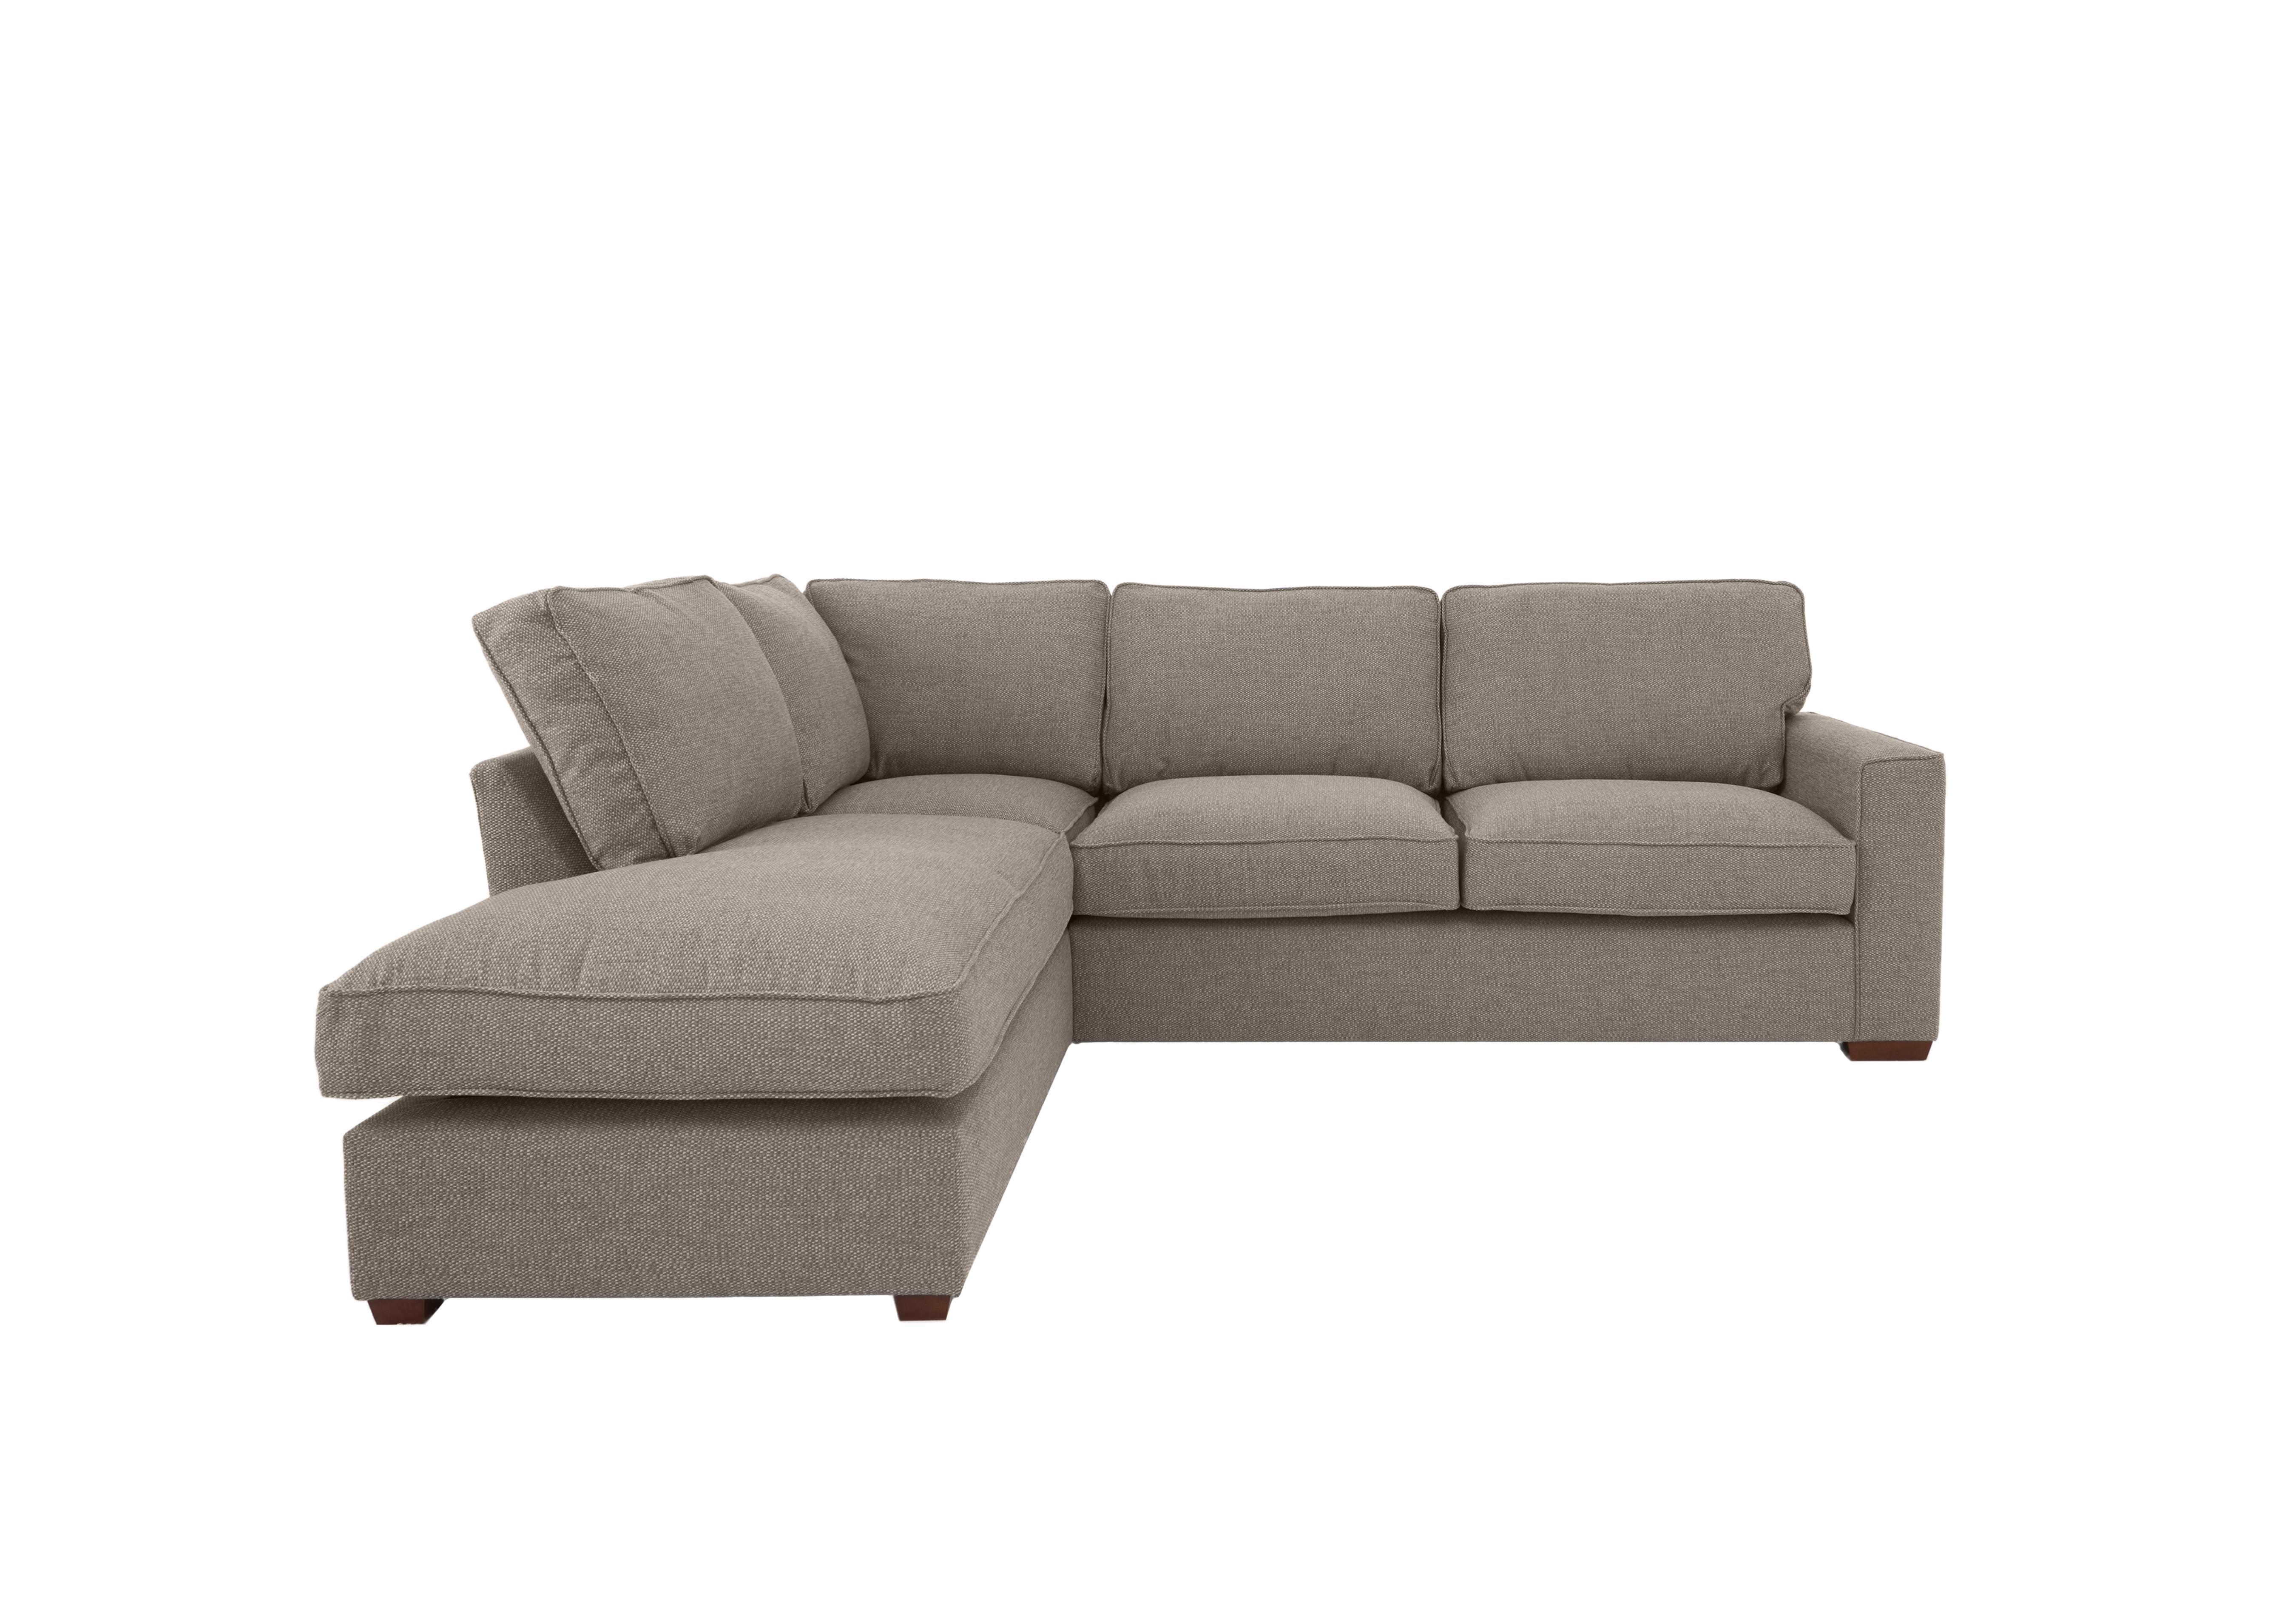 Cory Fabric Corner Chaise Classic Back Sofa in Dallas Natural on Furniture Village